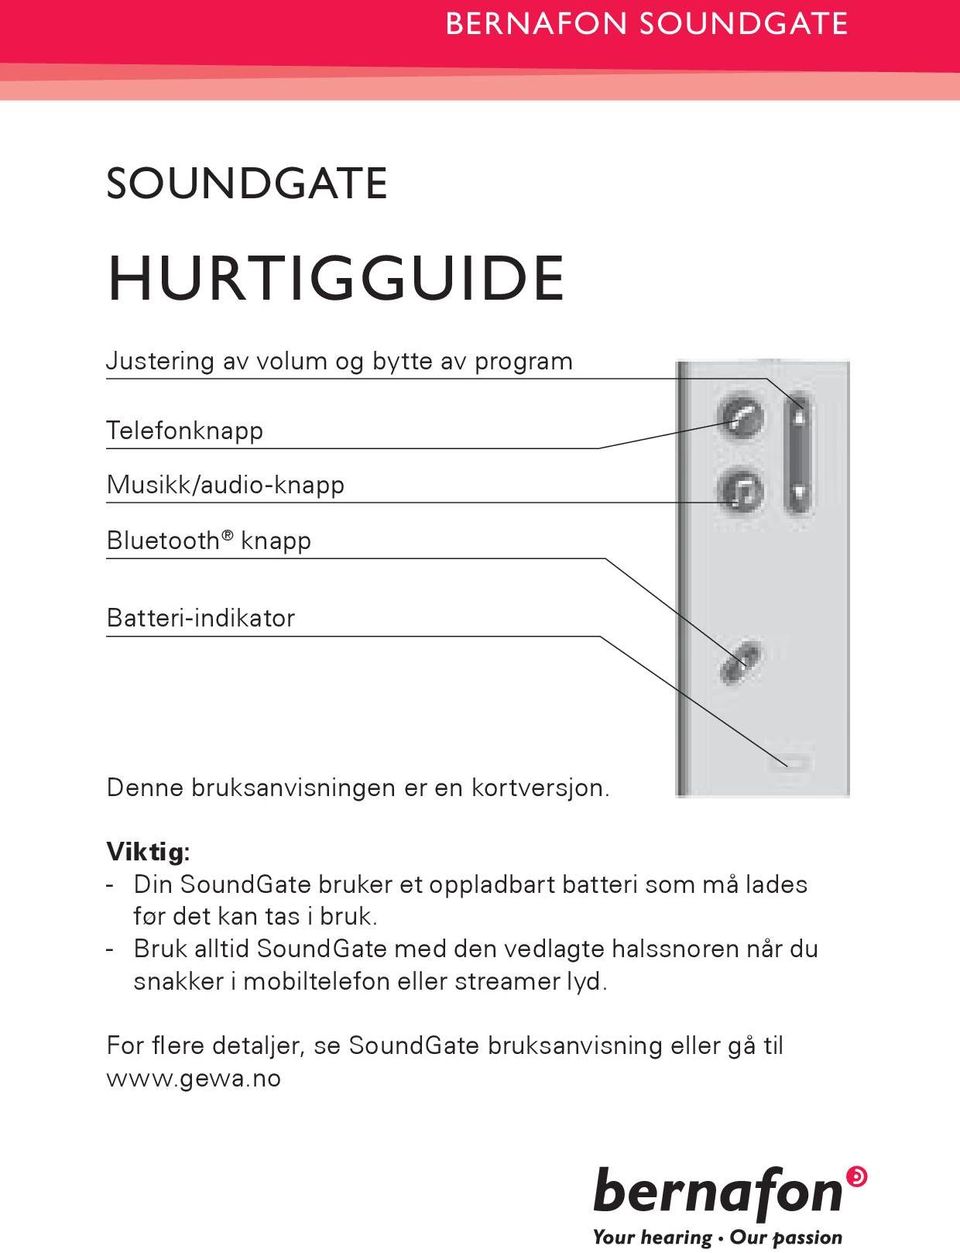 Viktig: - Din SoundGate bruker et oppladbart batteri som må lades før det kan tas i bruk.